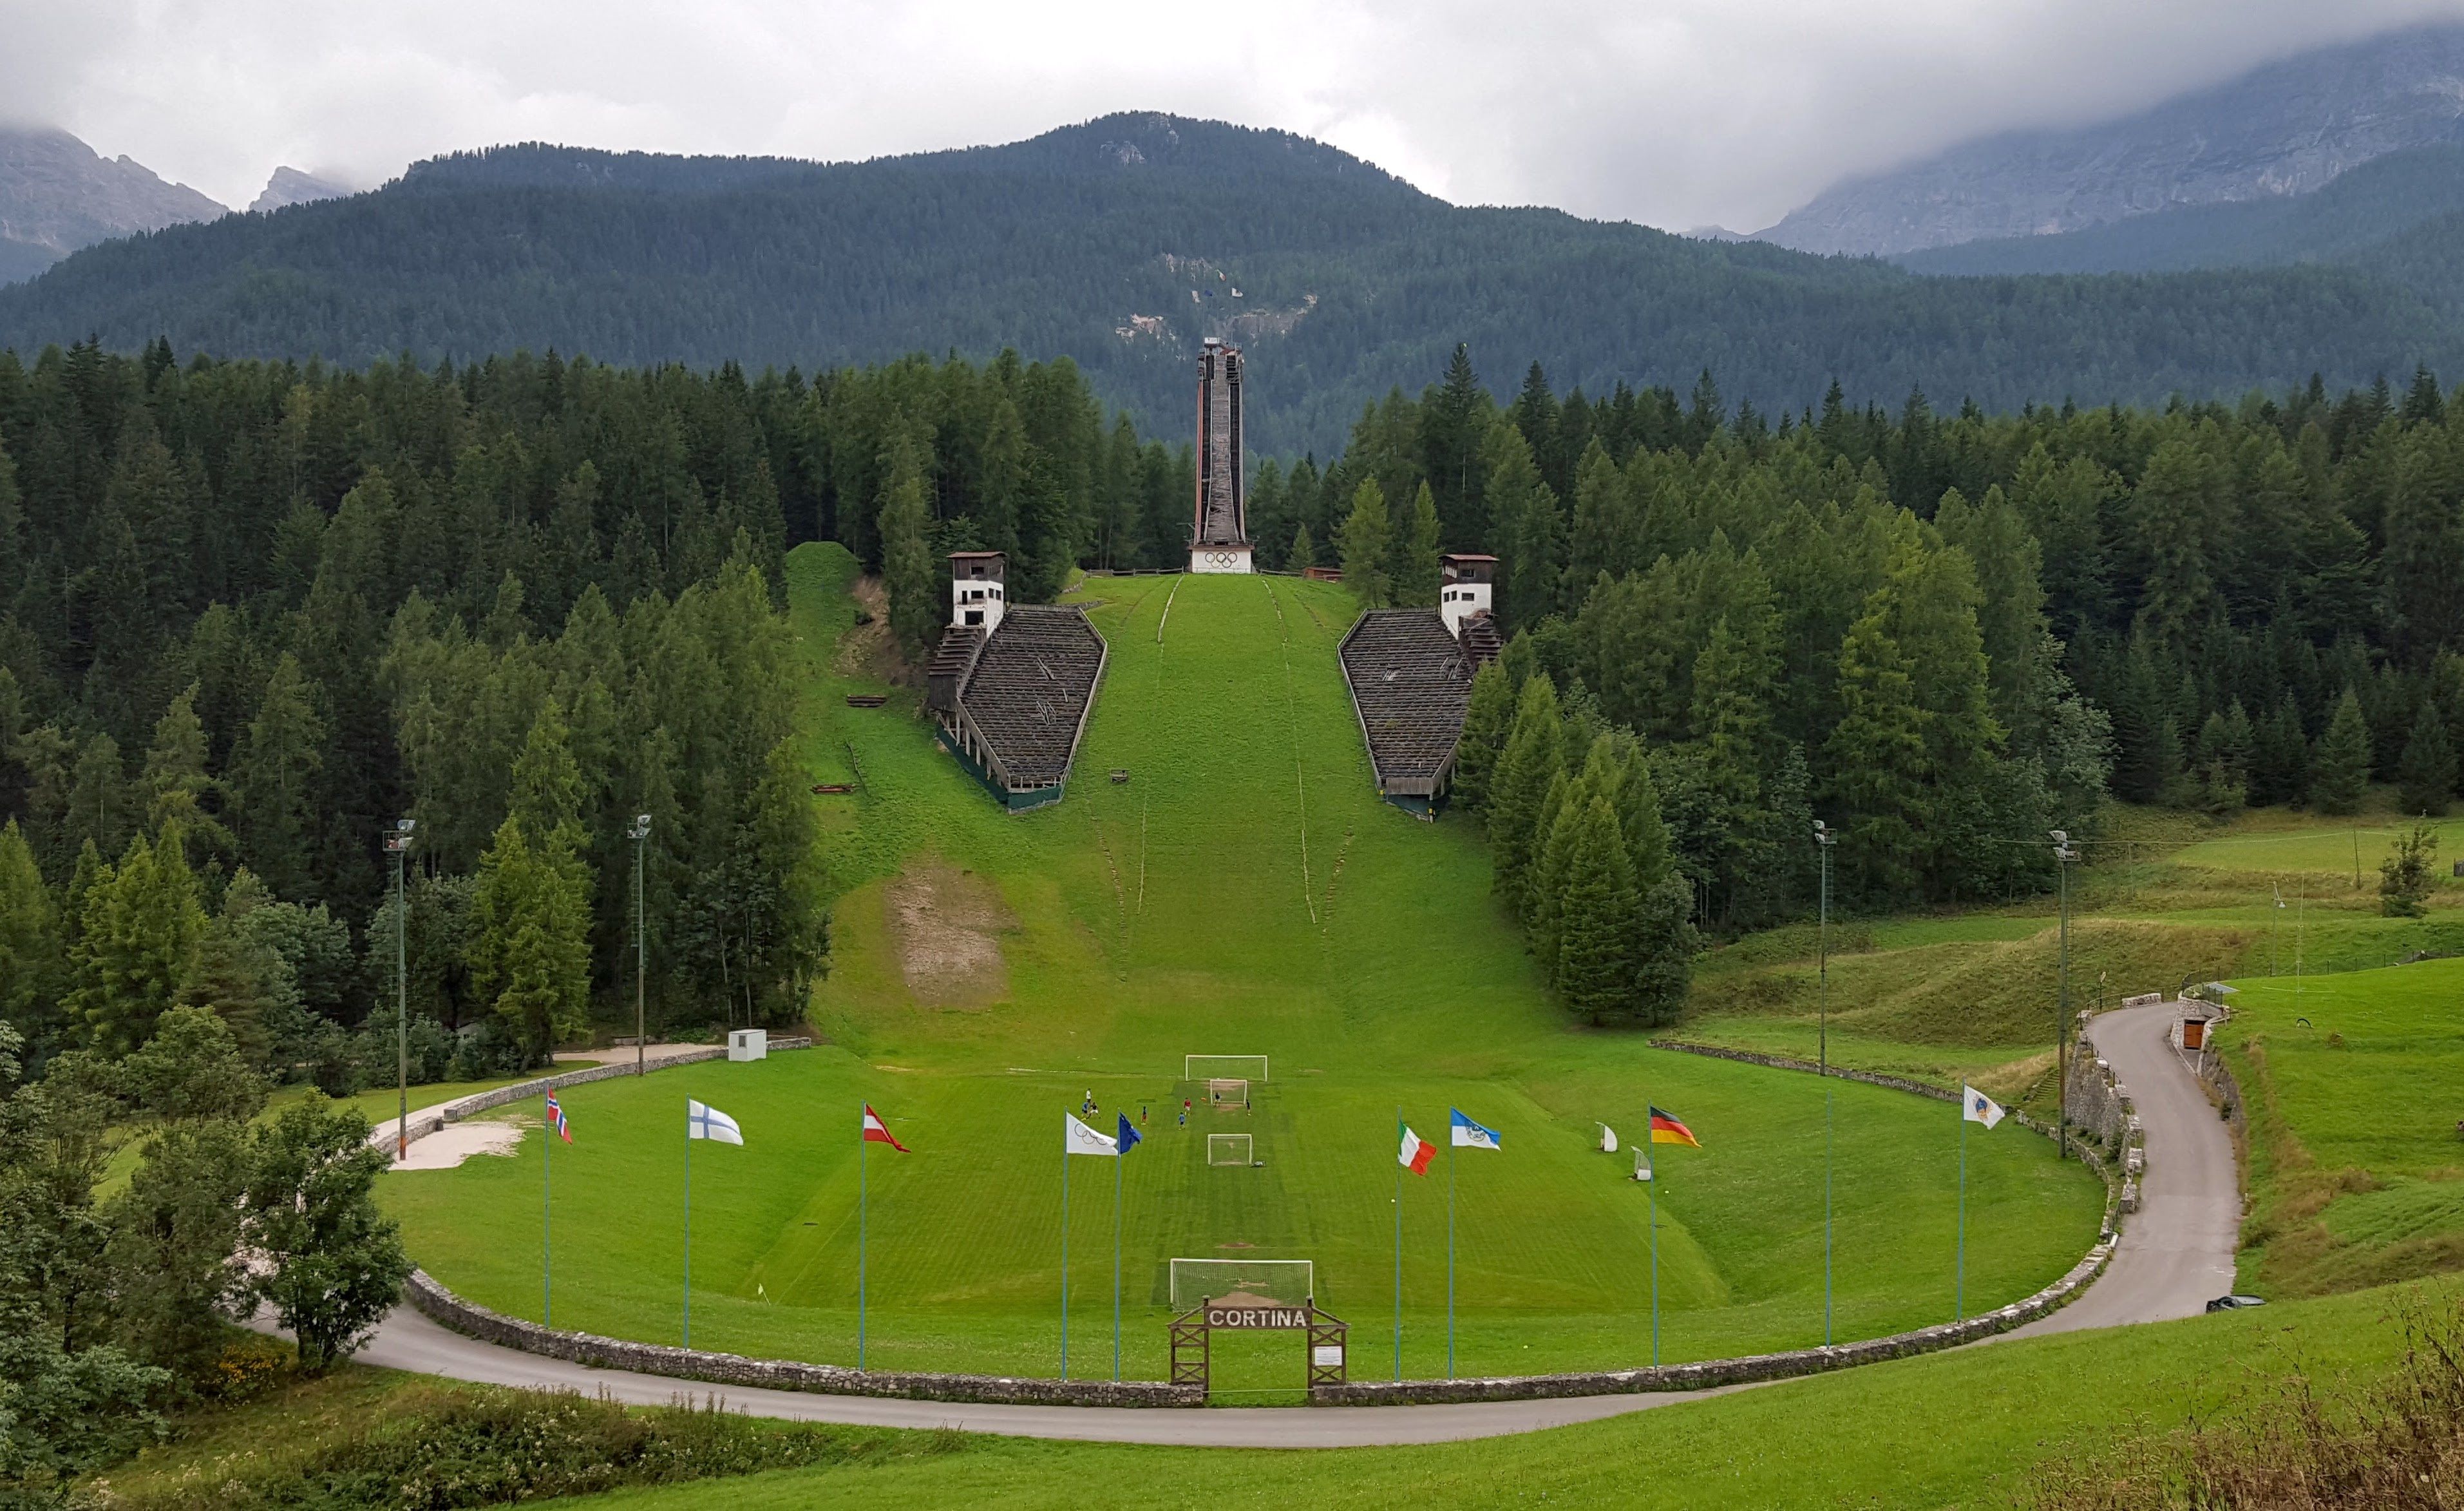 De Olympische schans van Cortina staat er nu verwaarloosd bij. In het stadion wordt tegenwoordig gevoetbald.